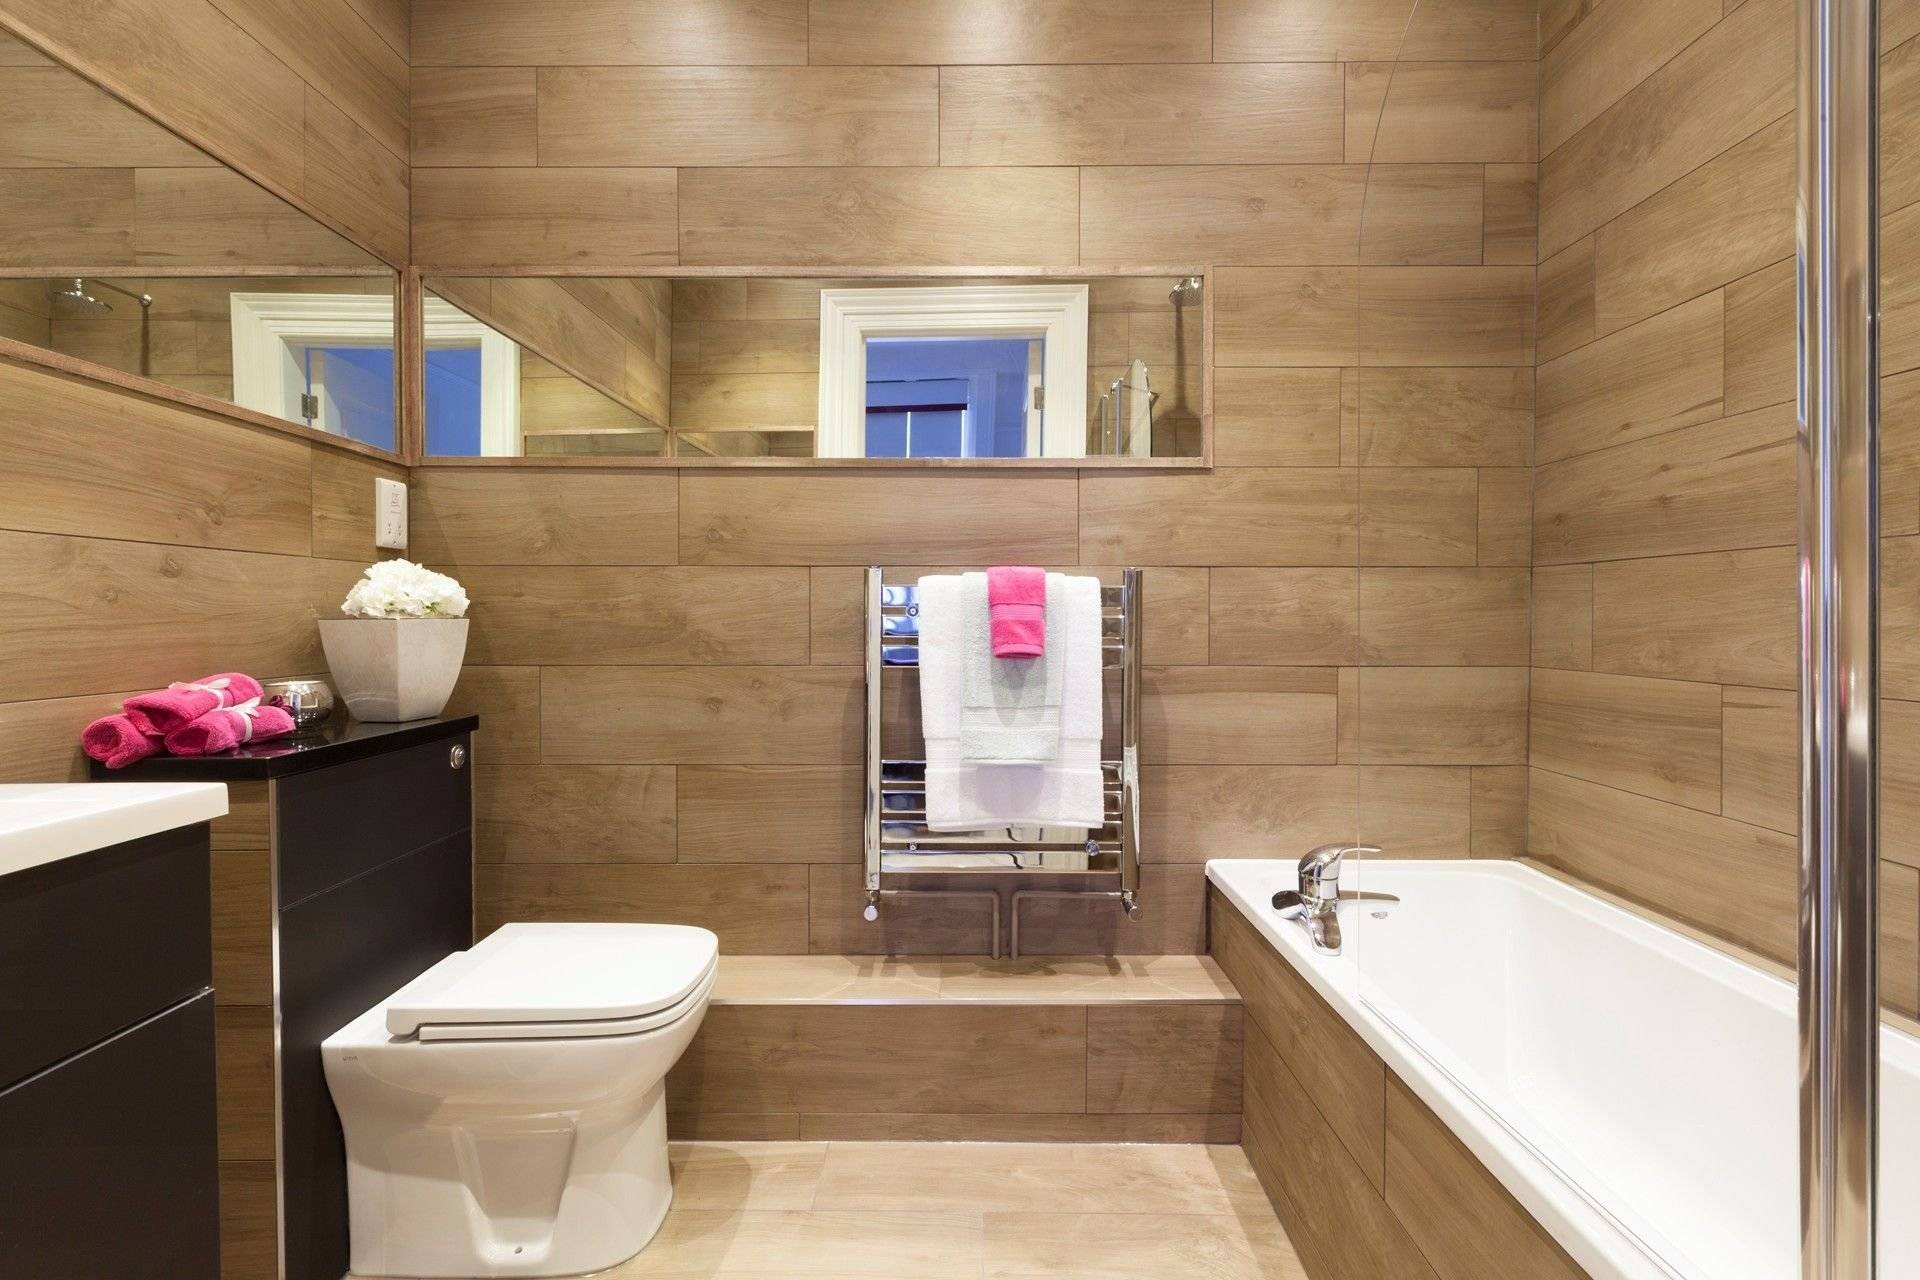 Ванная комната отделка стен панелями. Отделка ванной под дерево. Деревянные панели в ванную. Комбинированная отделка ванной. Ванная комната с деревом.